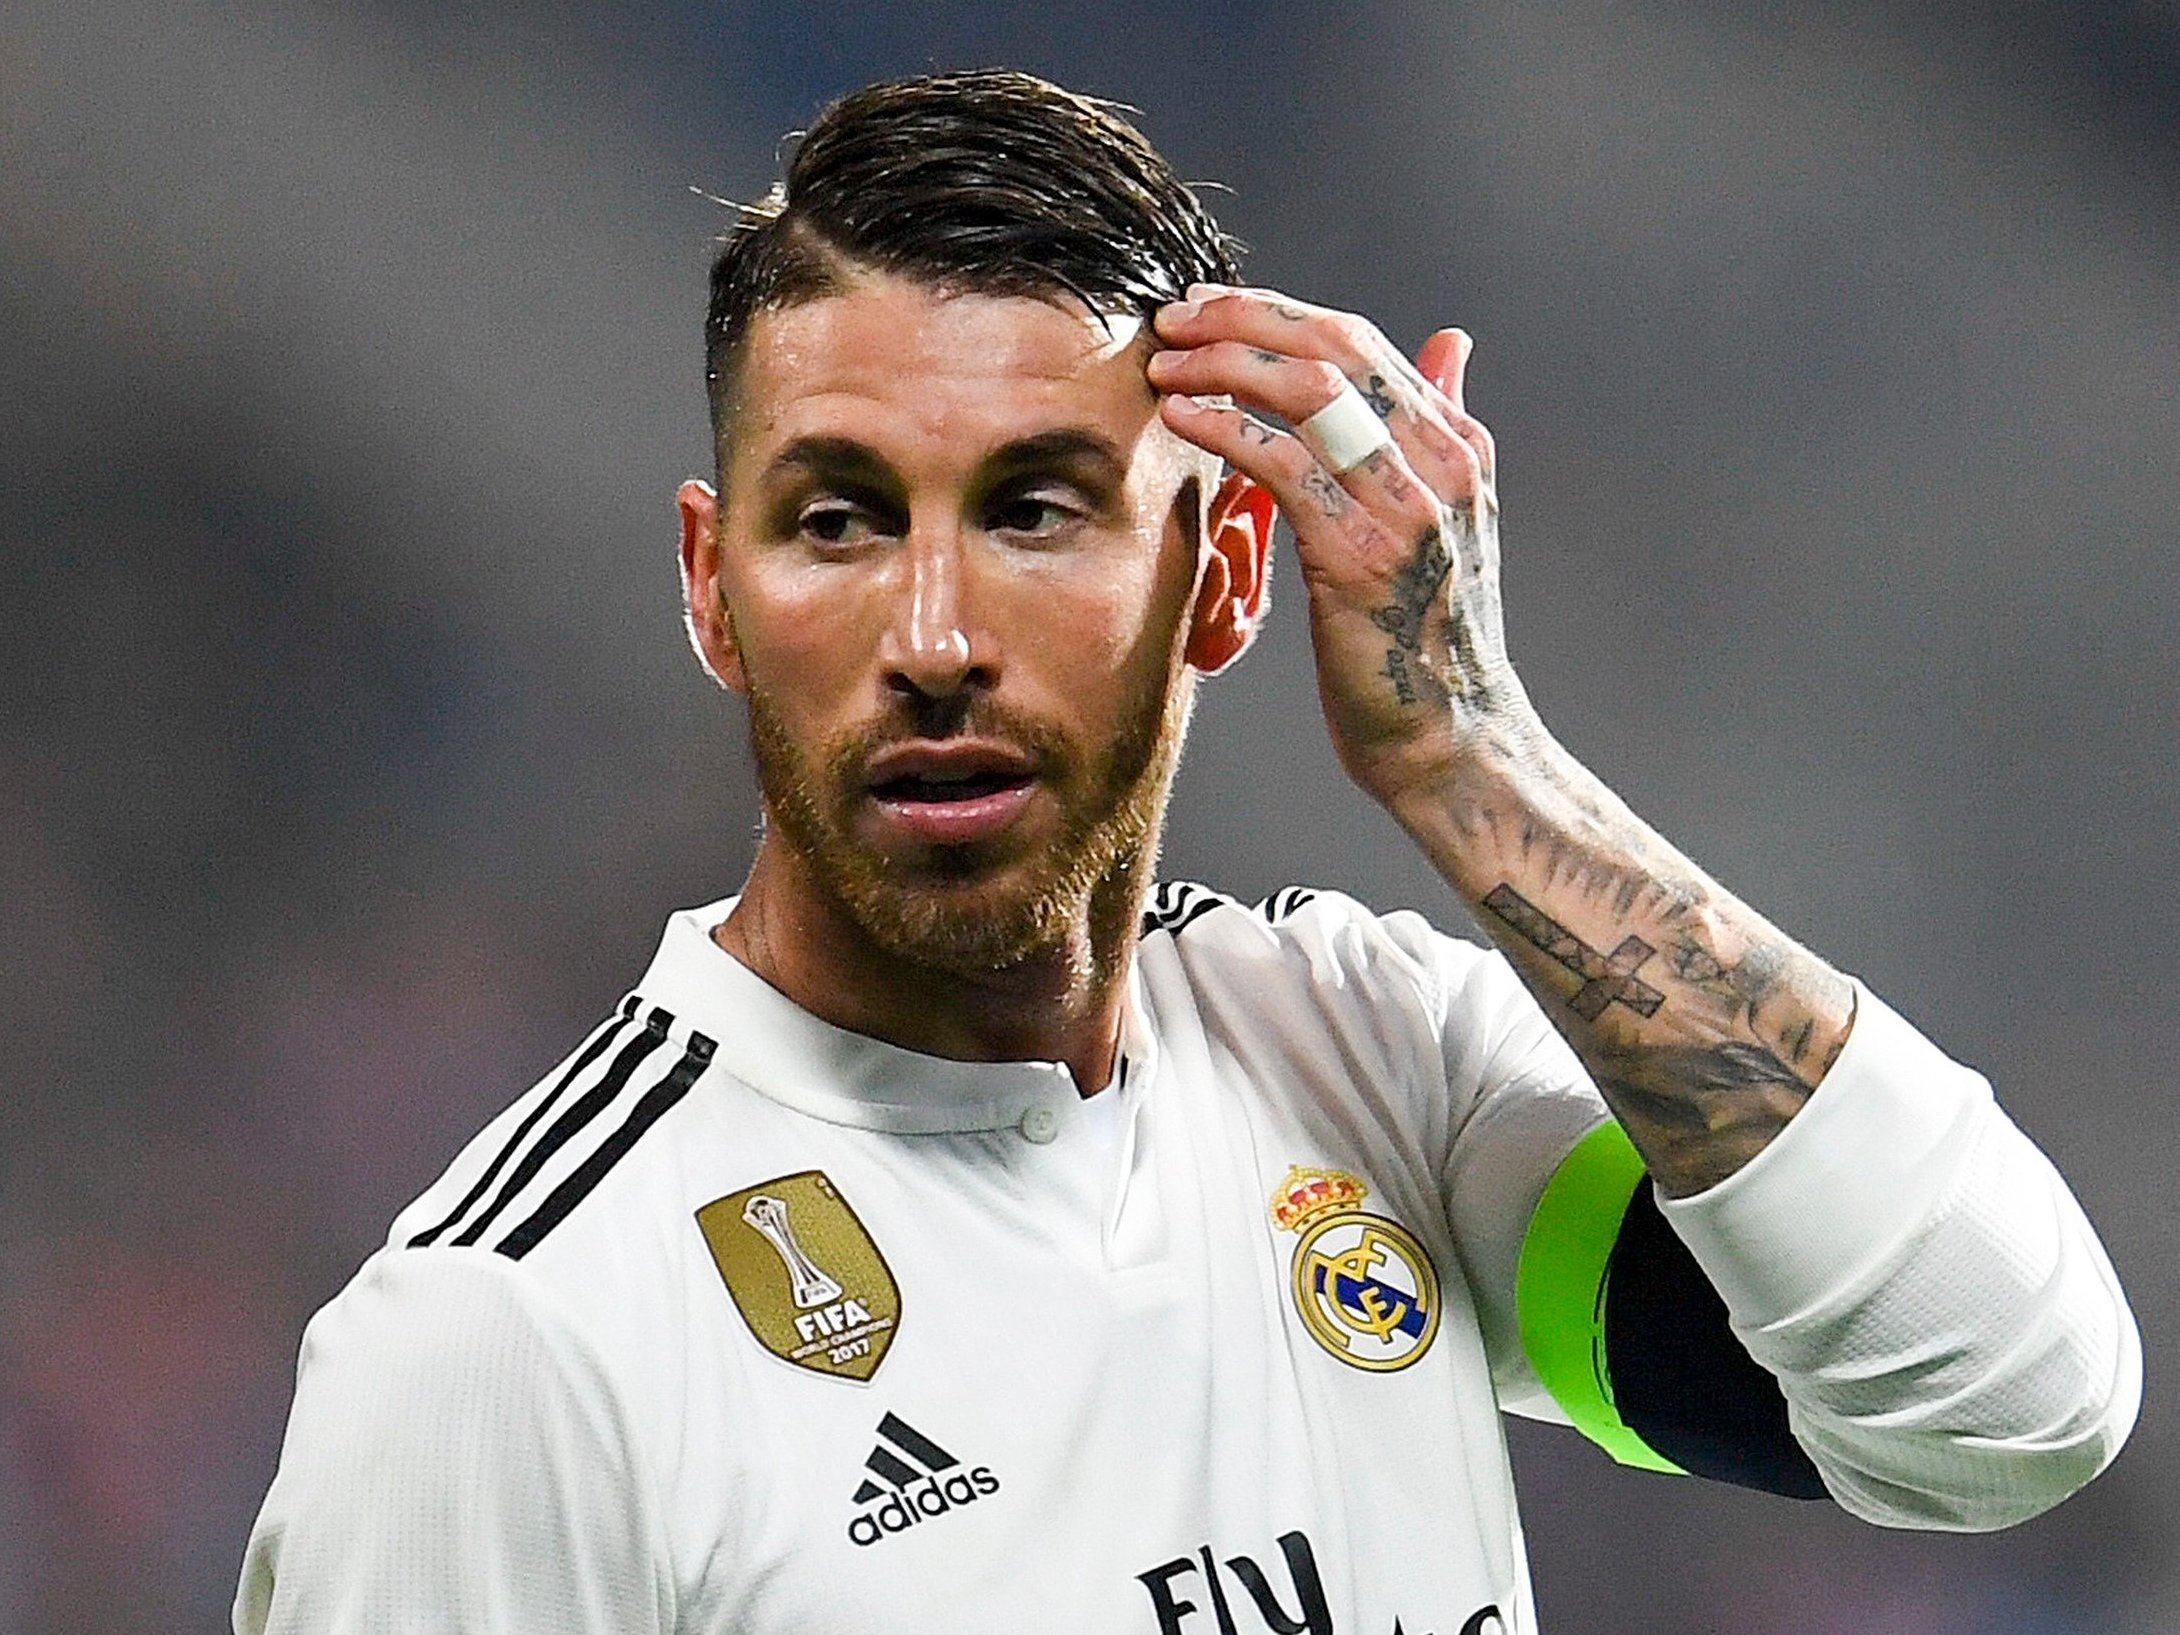 UEFA ra án phạt với Ramos vì hành vi tẩy thẻ - Báo Quảng Ninh điện tử